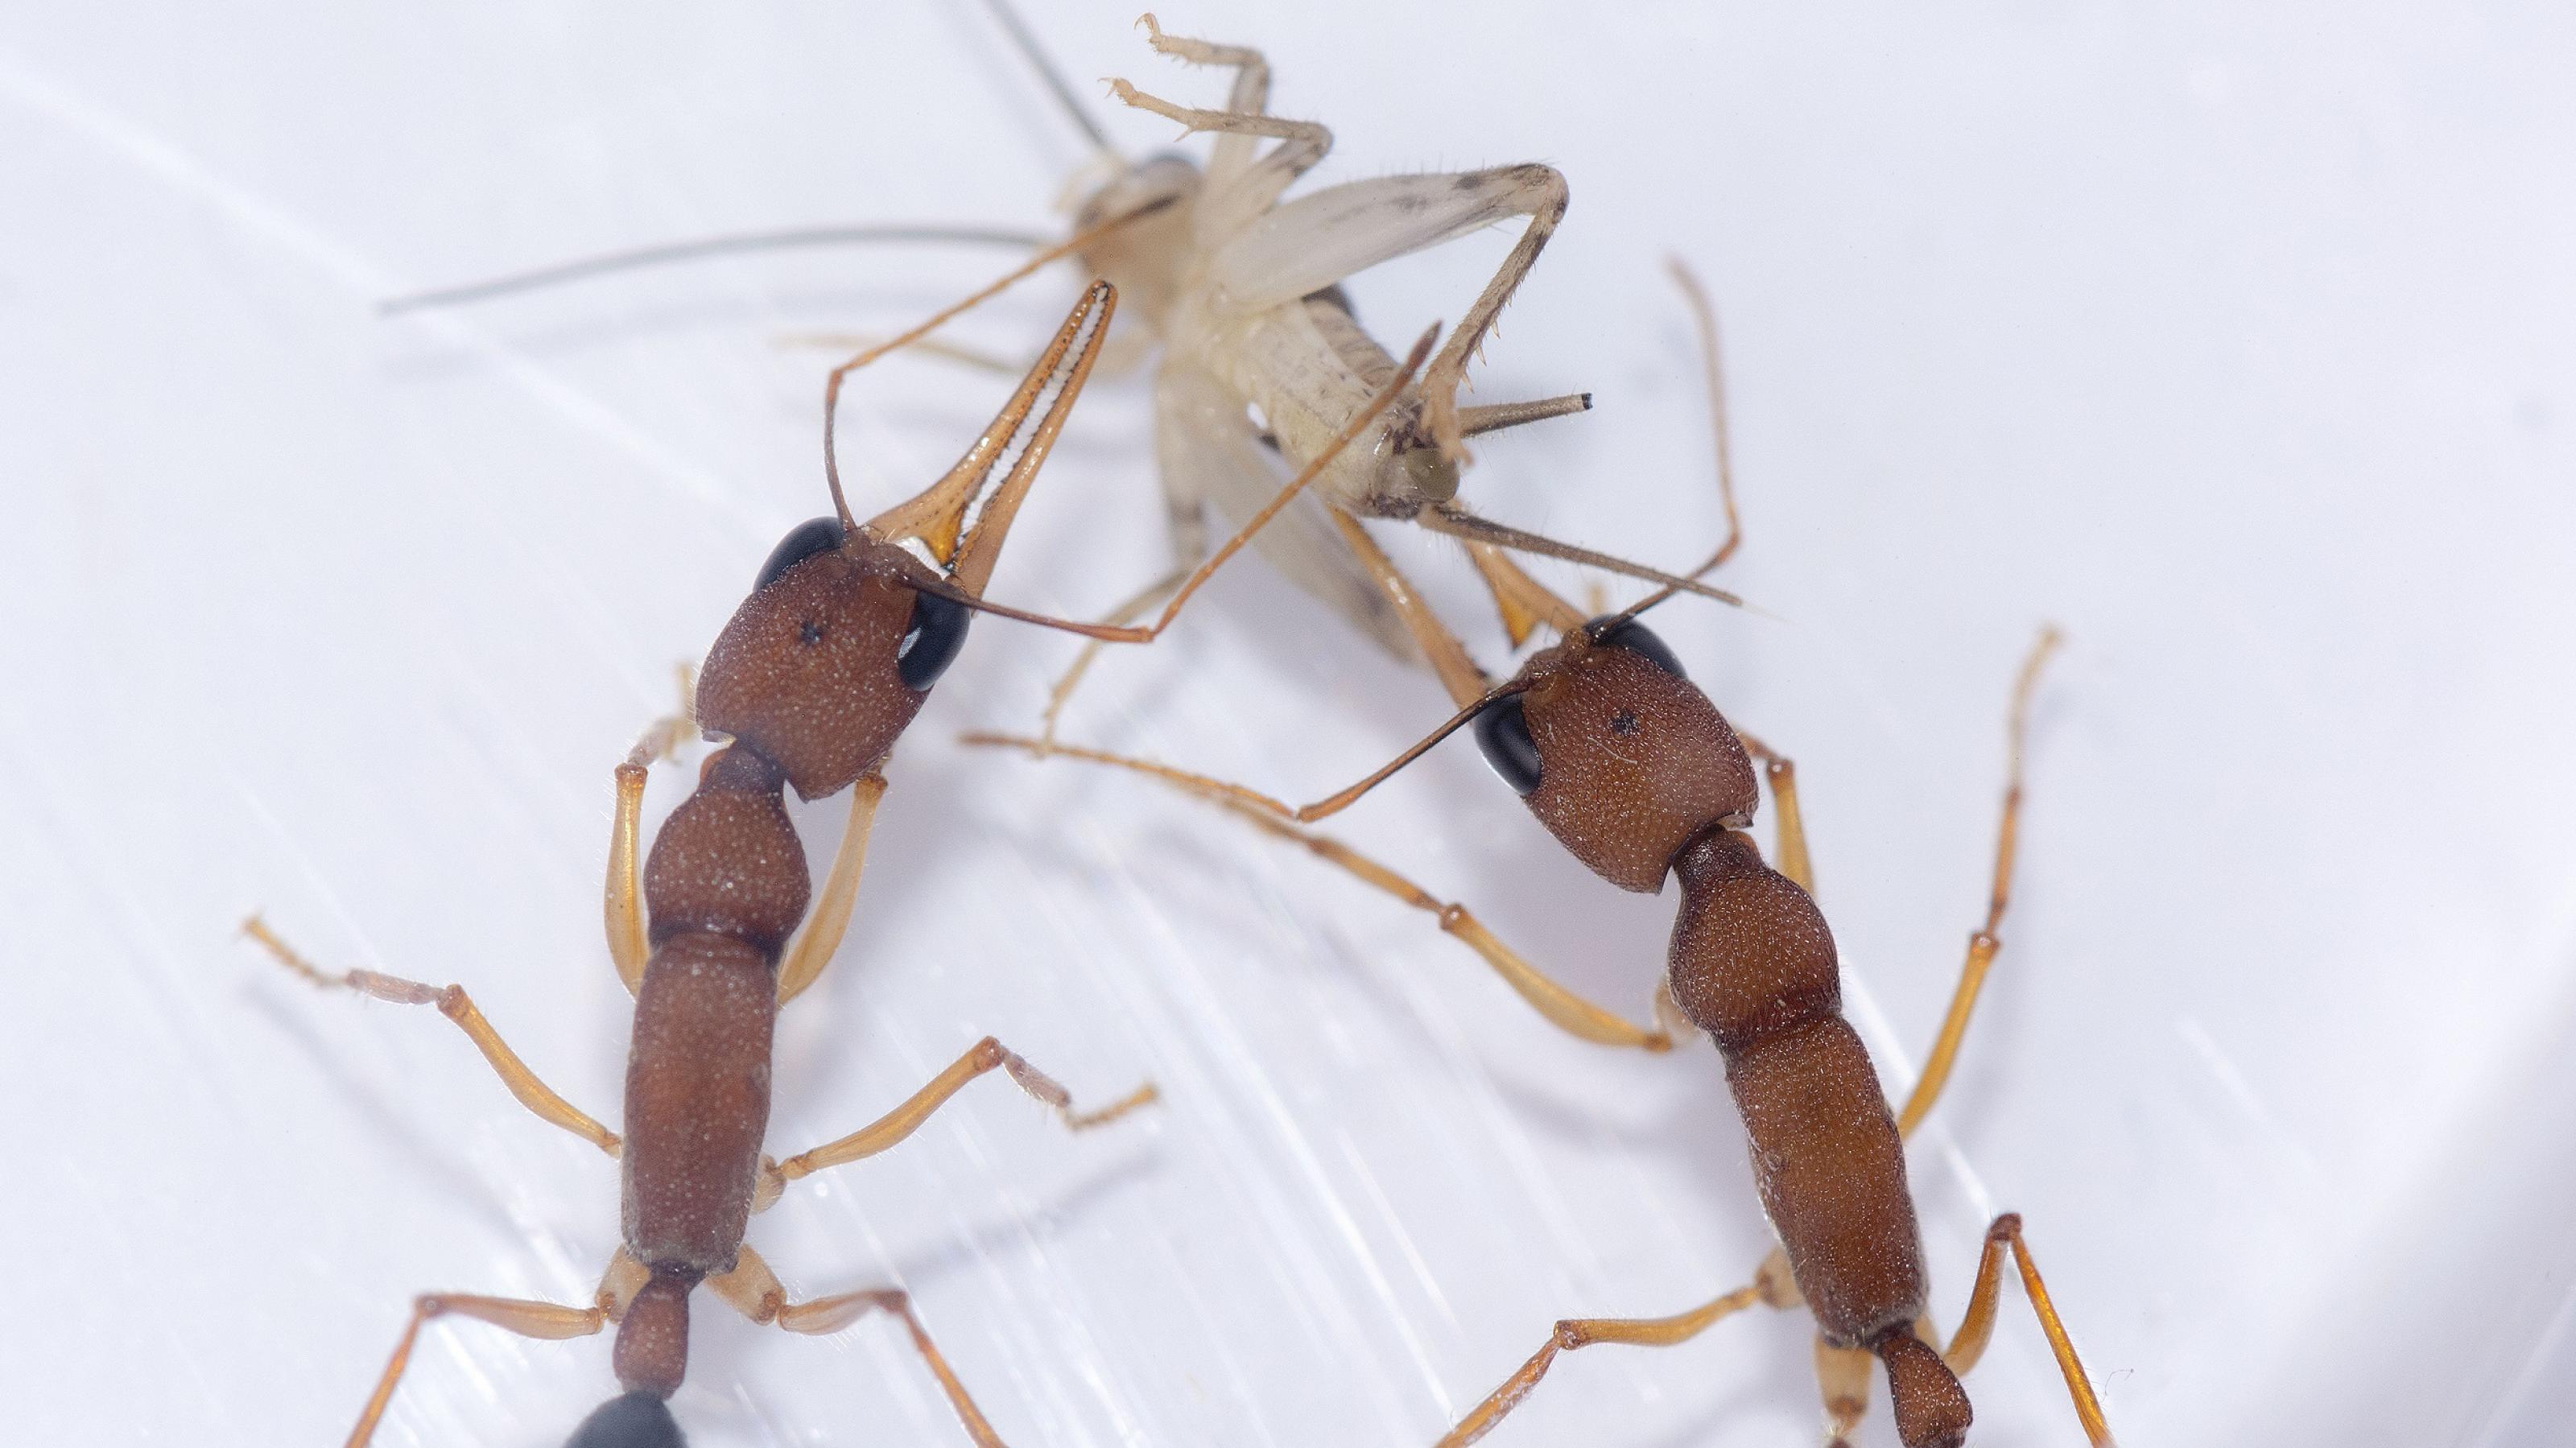 Zwei große, dunkle Ameisen zerren gemeinsam an einer kleinen, fast durchsichtigen Grille.